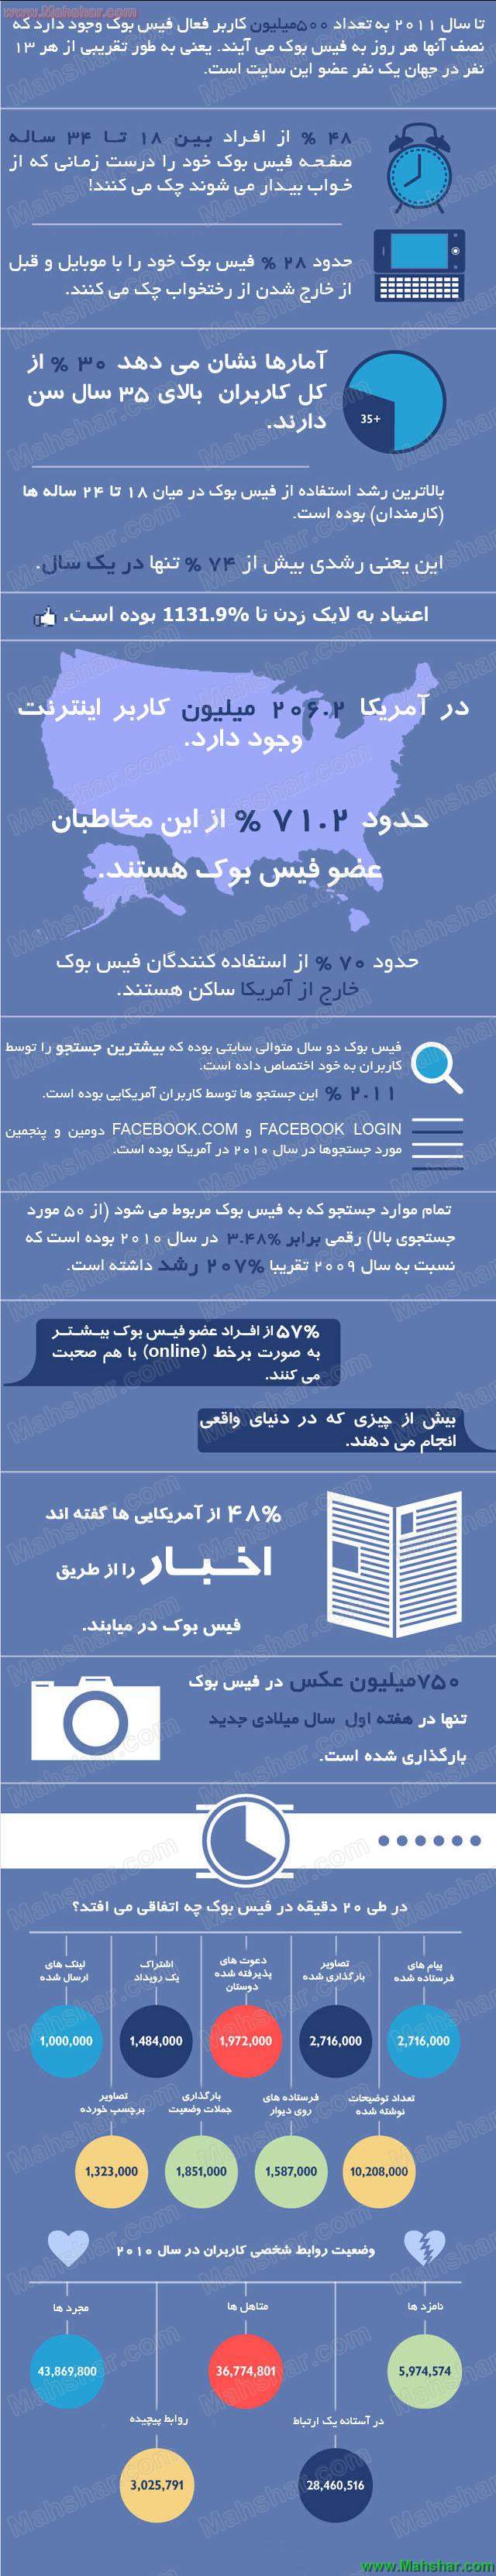 فیس بوک سومین کشور پرجمعیت دنیا!